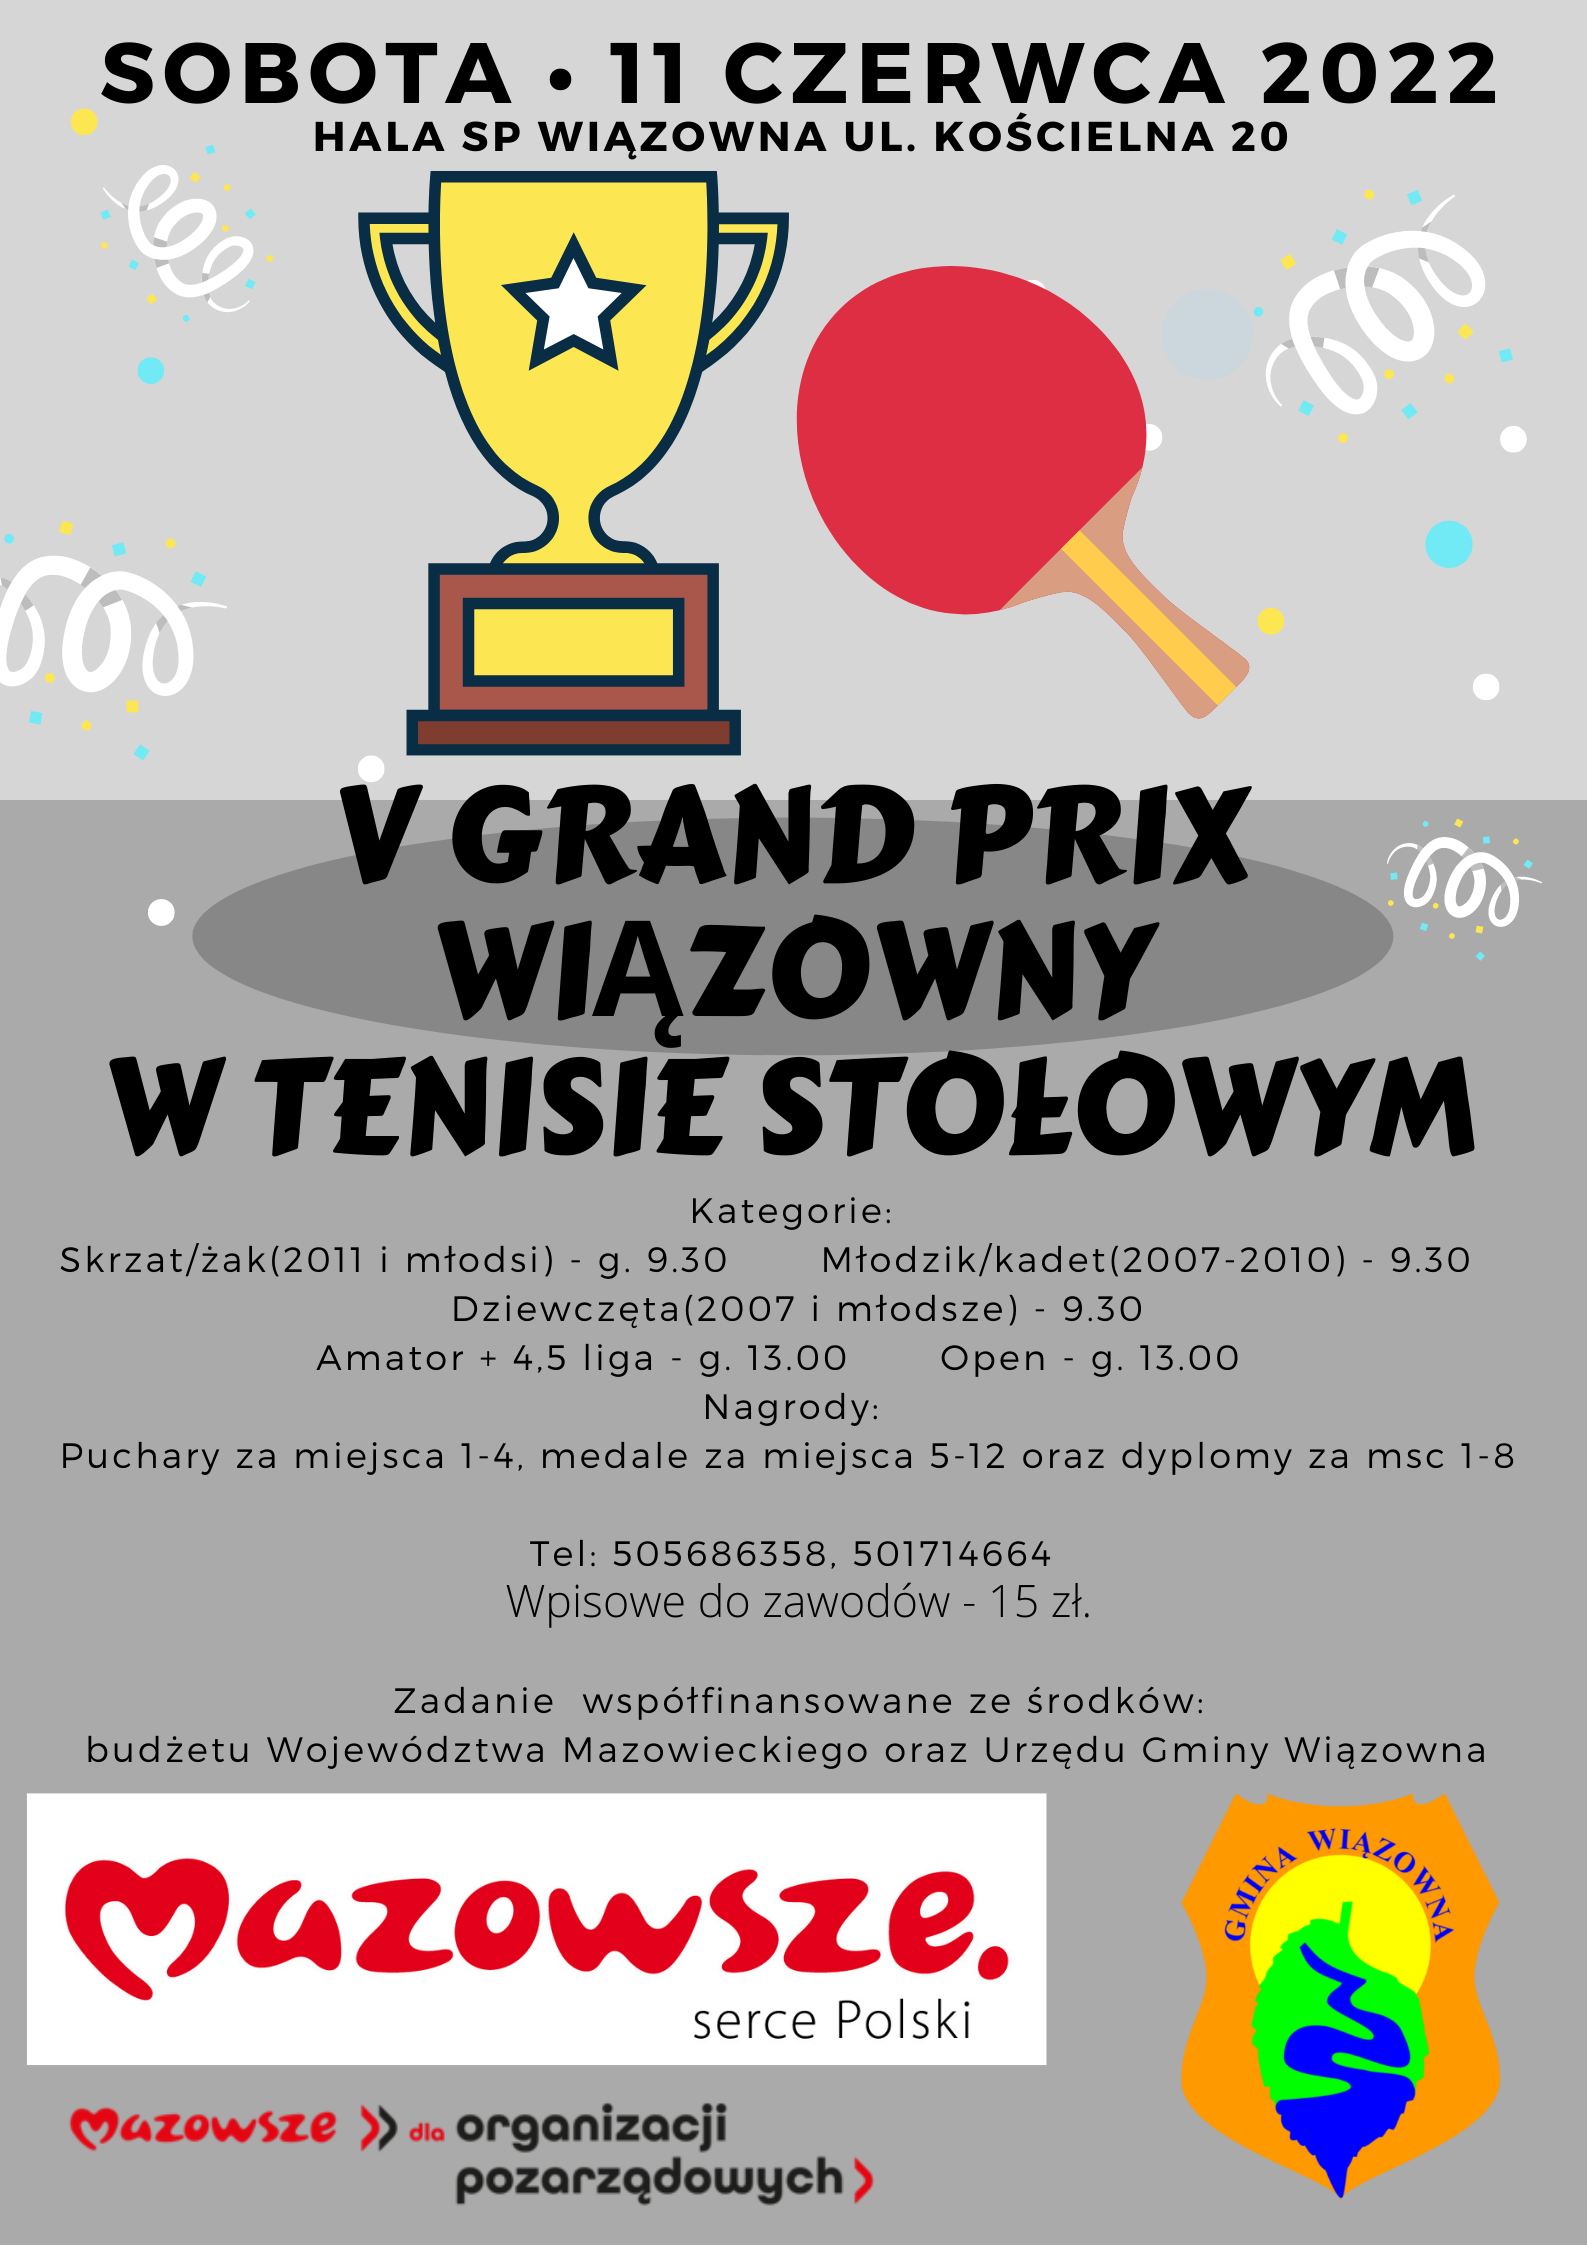 Zapraszamy na V Turniej Grand Prix Wiązowny w Tenisie Stołowym. Zawody odbędą się w sobotę 11 czerwca 2022r. w hali SP Wiązowna ul. Kościelna 20.